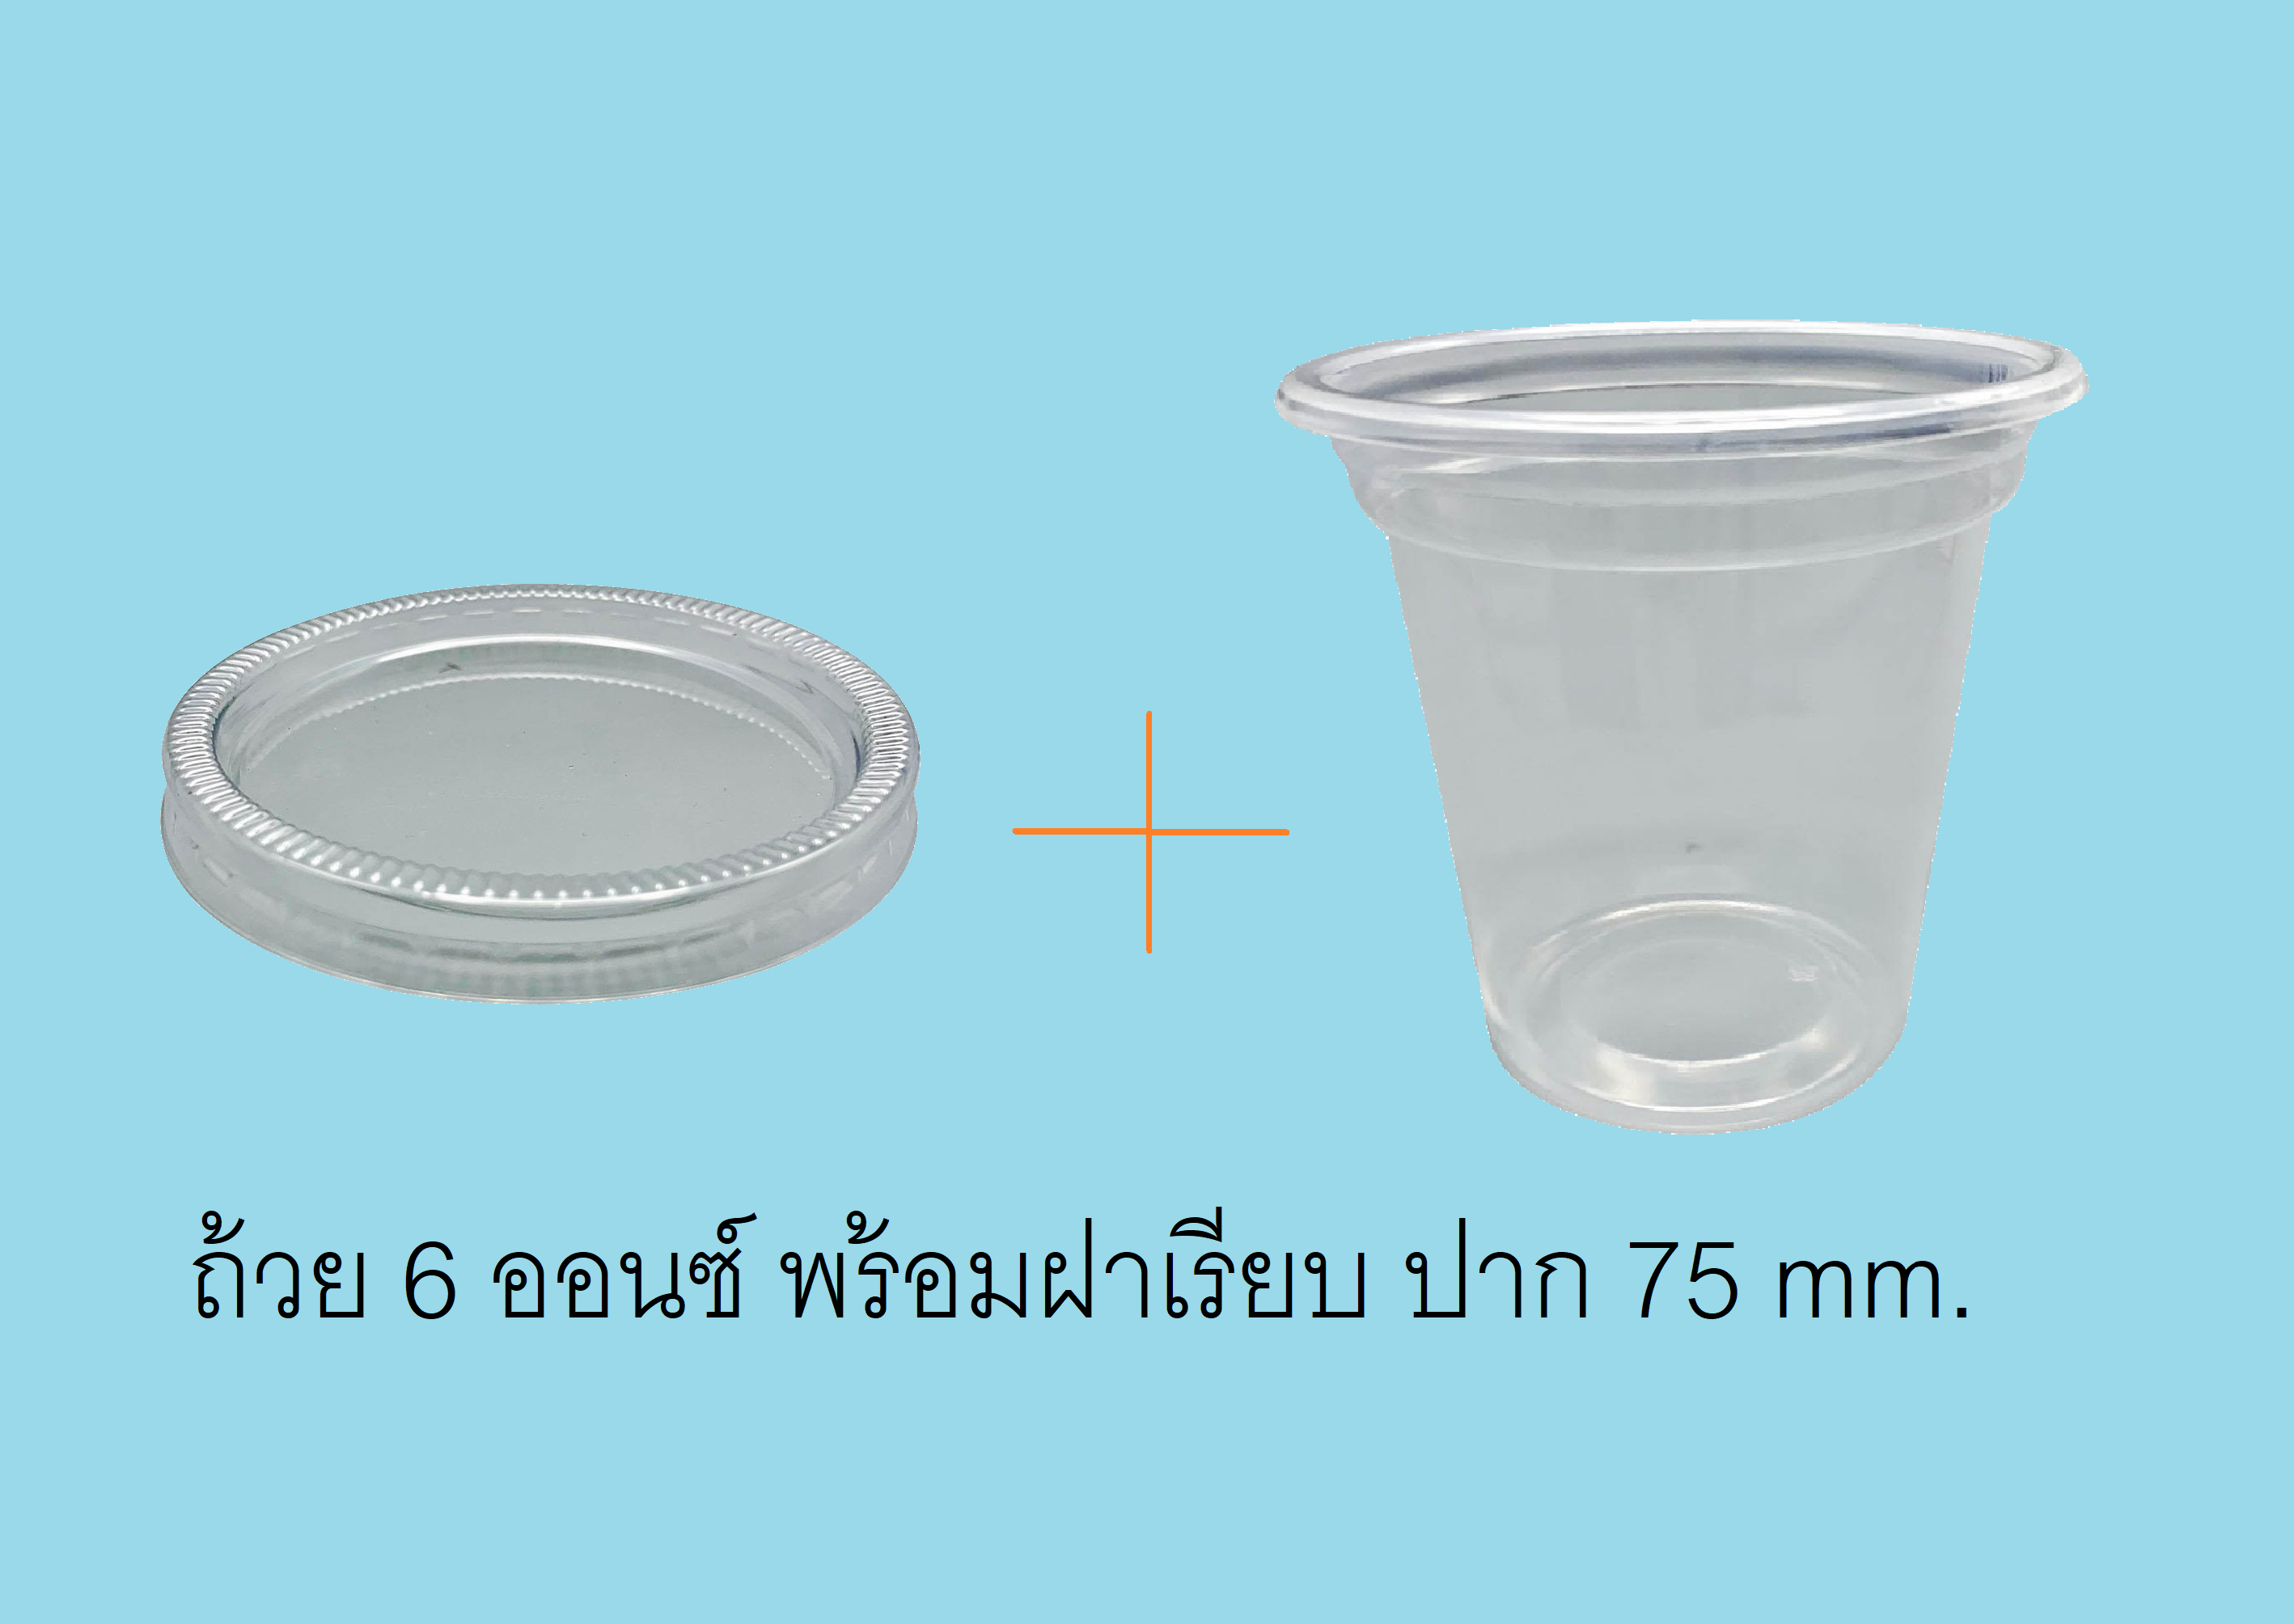 ถ้วยพลาสติก PP 6 ออนซ์ (50 ชิ้น) + ฝาเรียบ ขนาด 75 mm (50 ชิ้น)